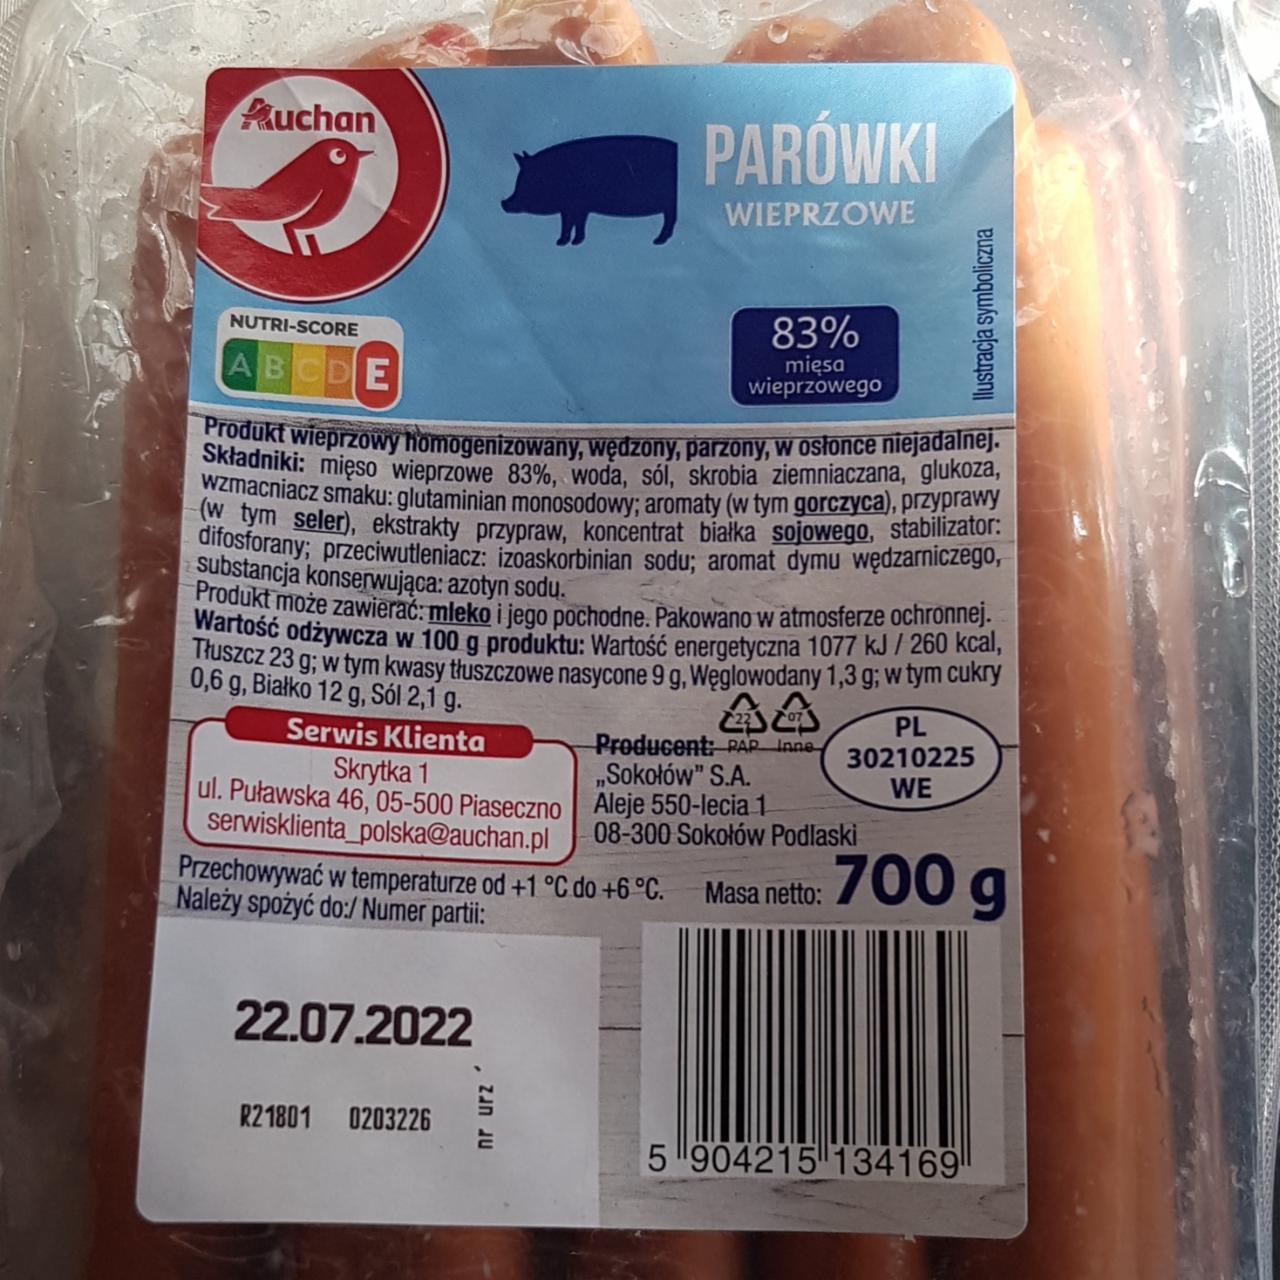 Zdjęcia - Parówki wieprzowe 83% mięsa auchan